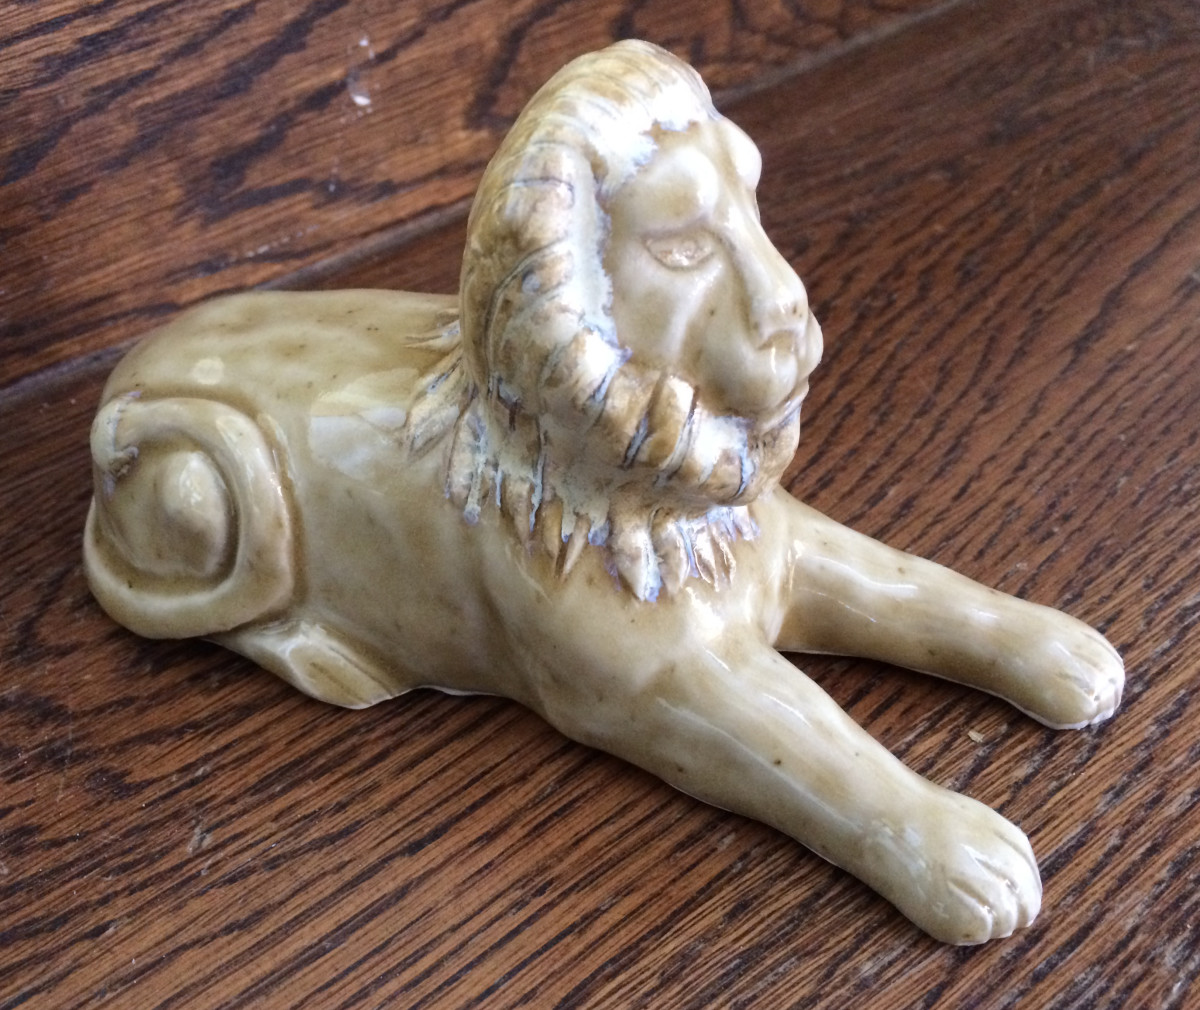 Leonard the lying lion by Nell Eakin 